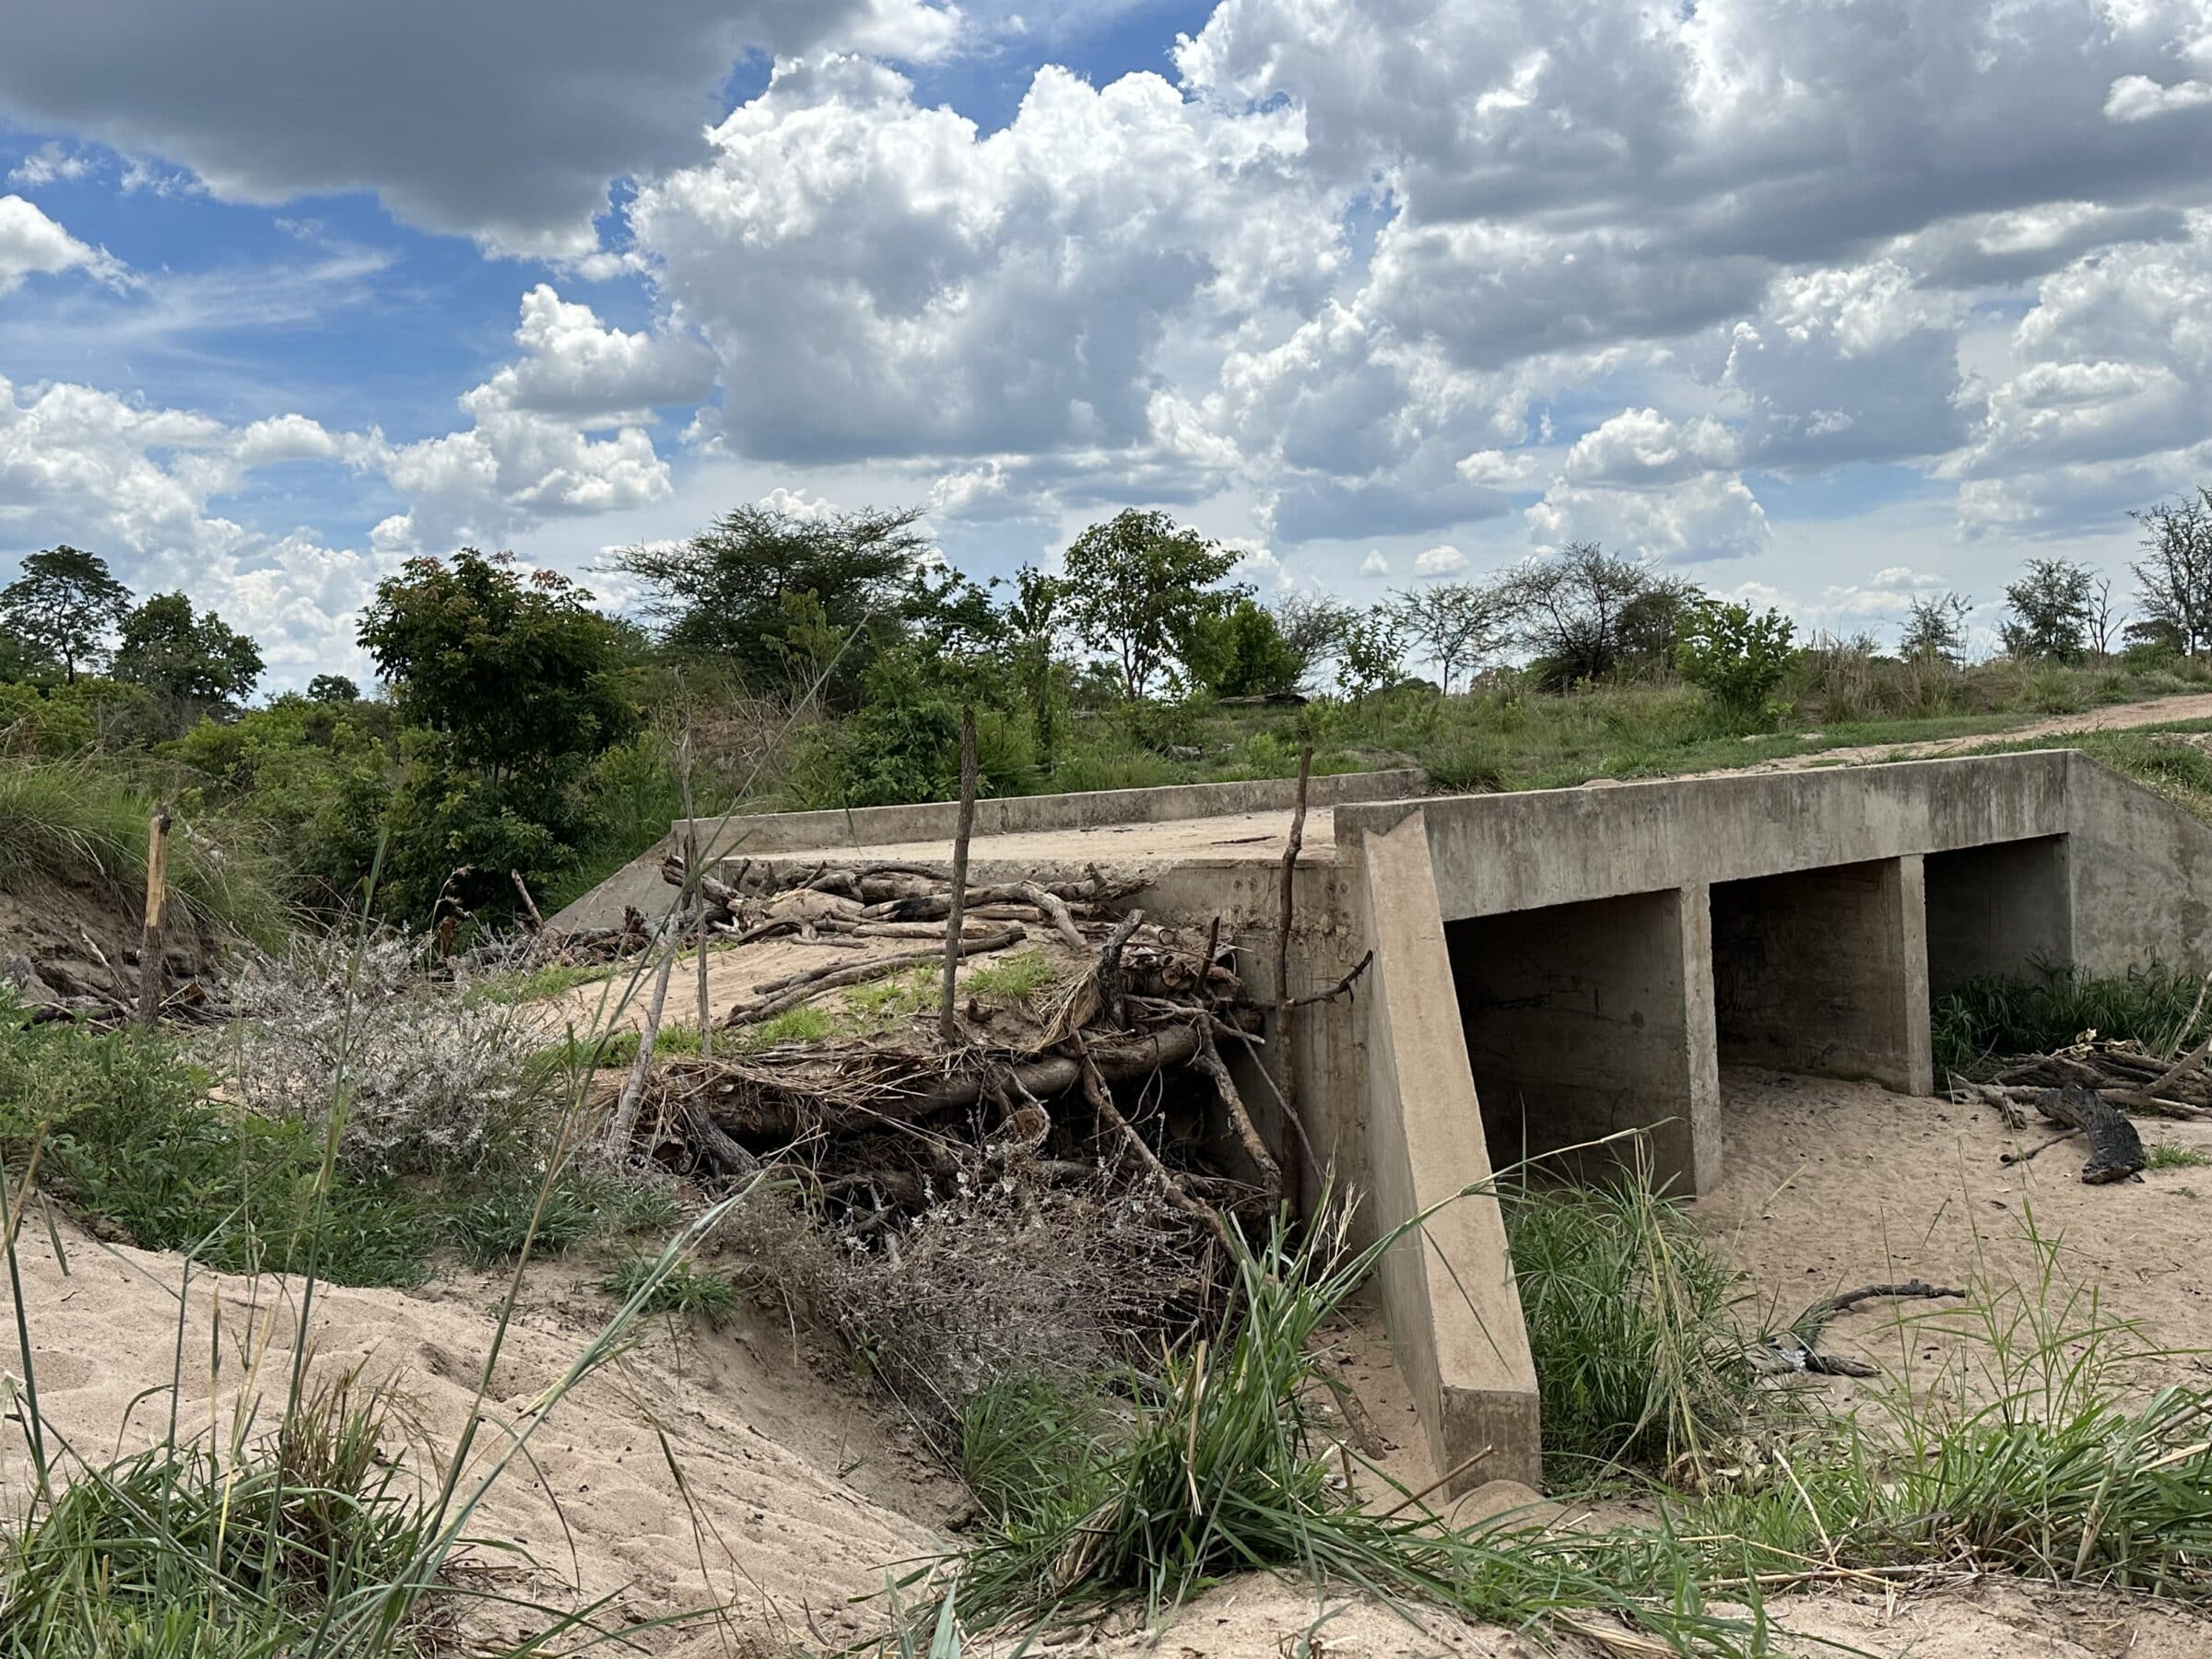 Obrukbar bro | Överlandning i Zambia